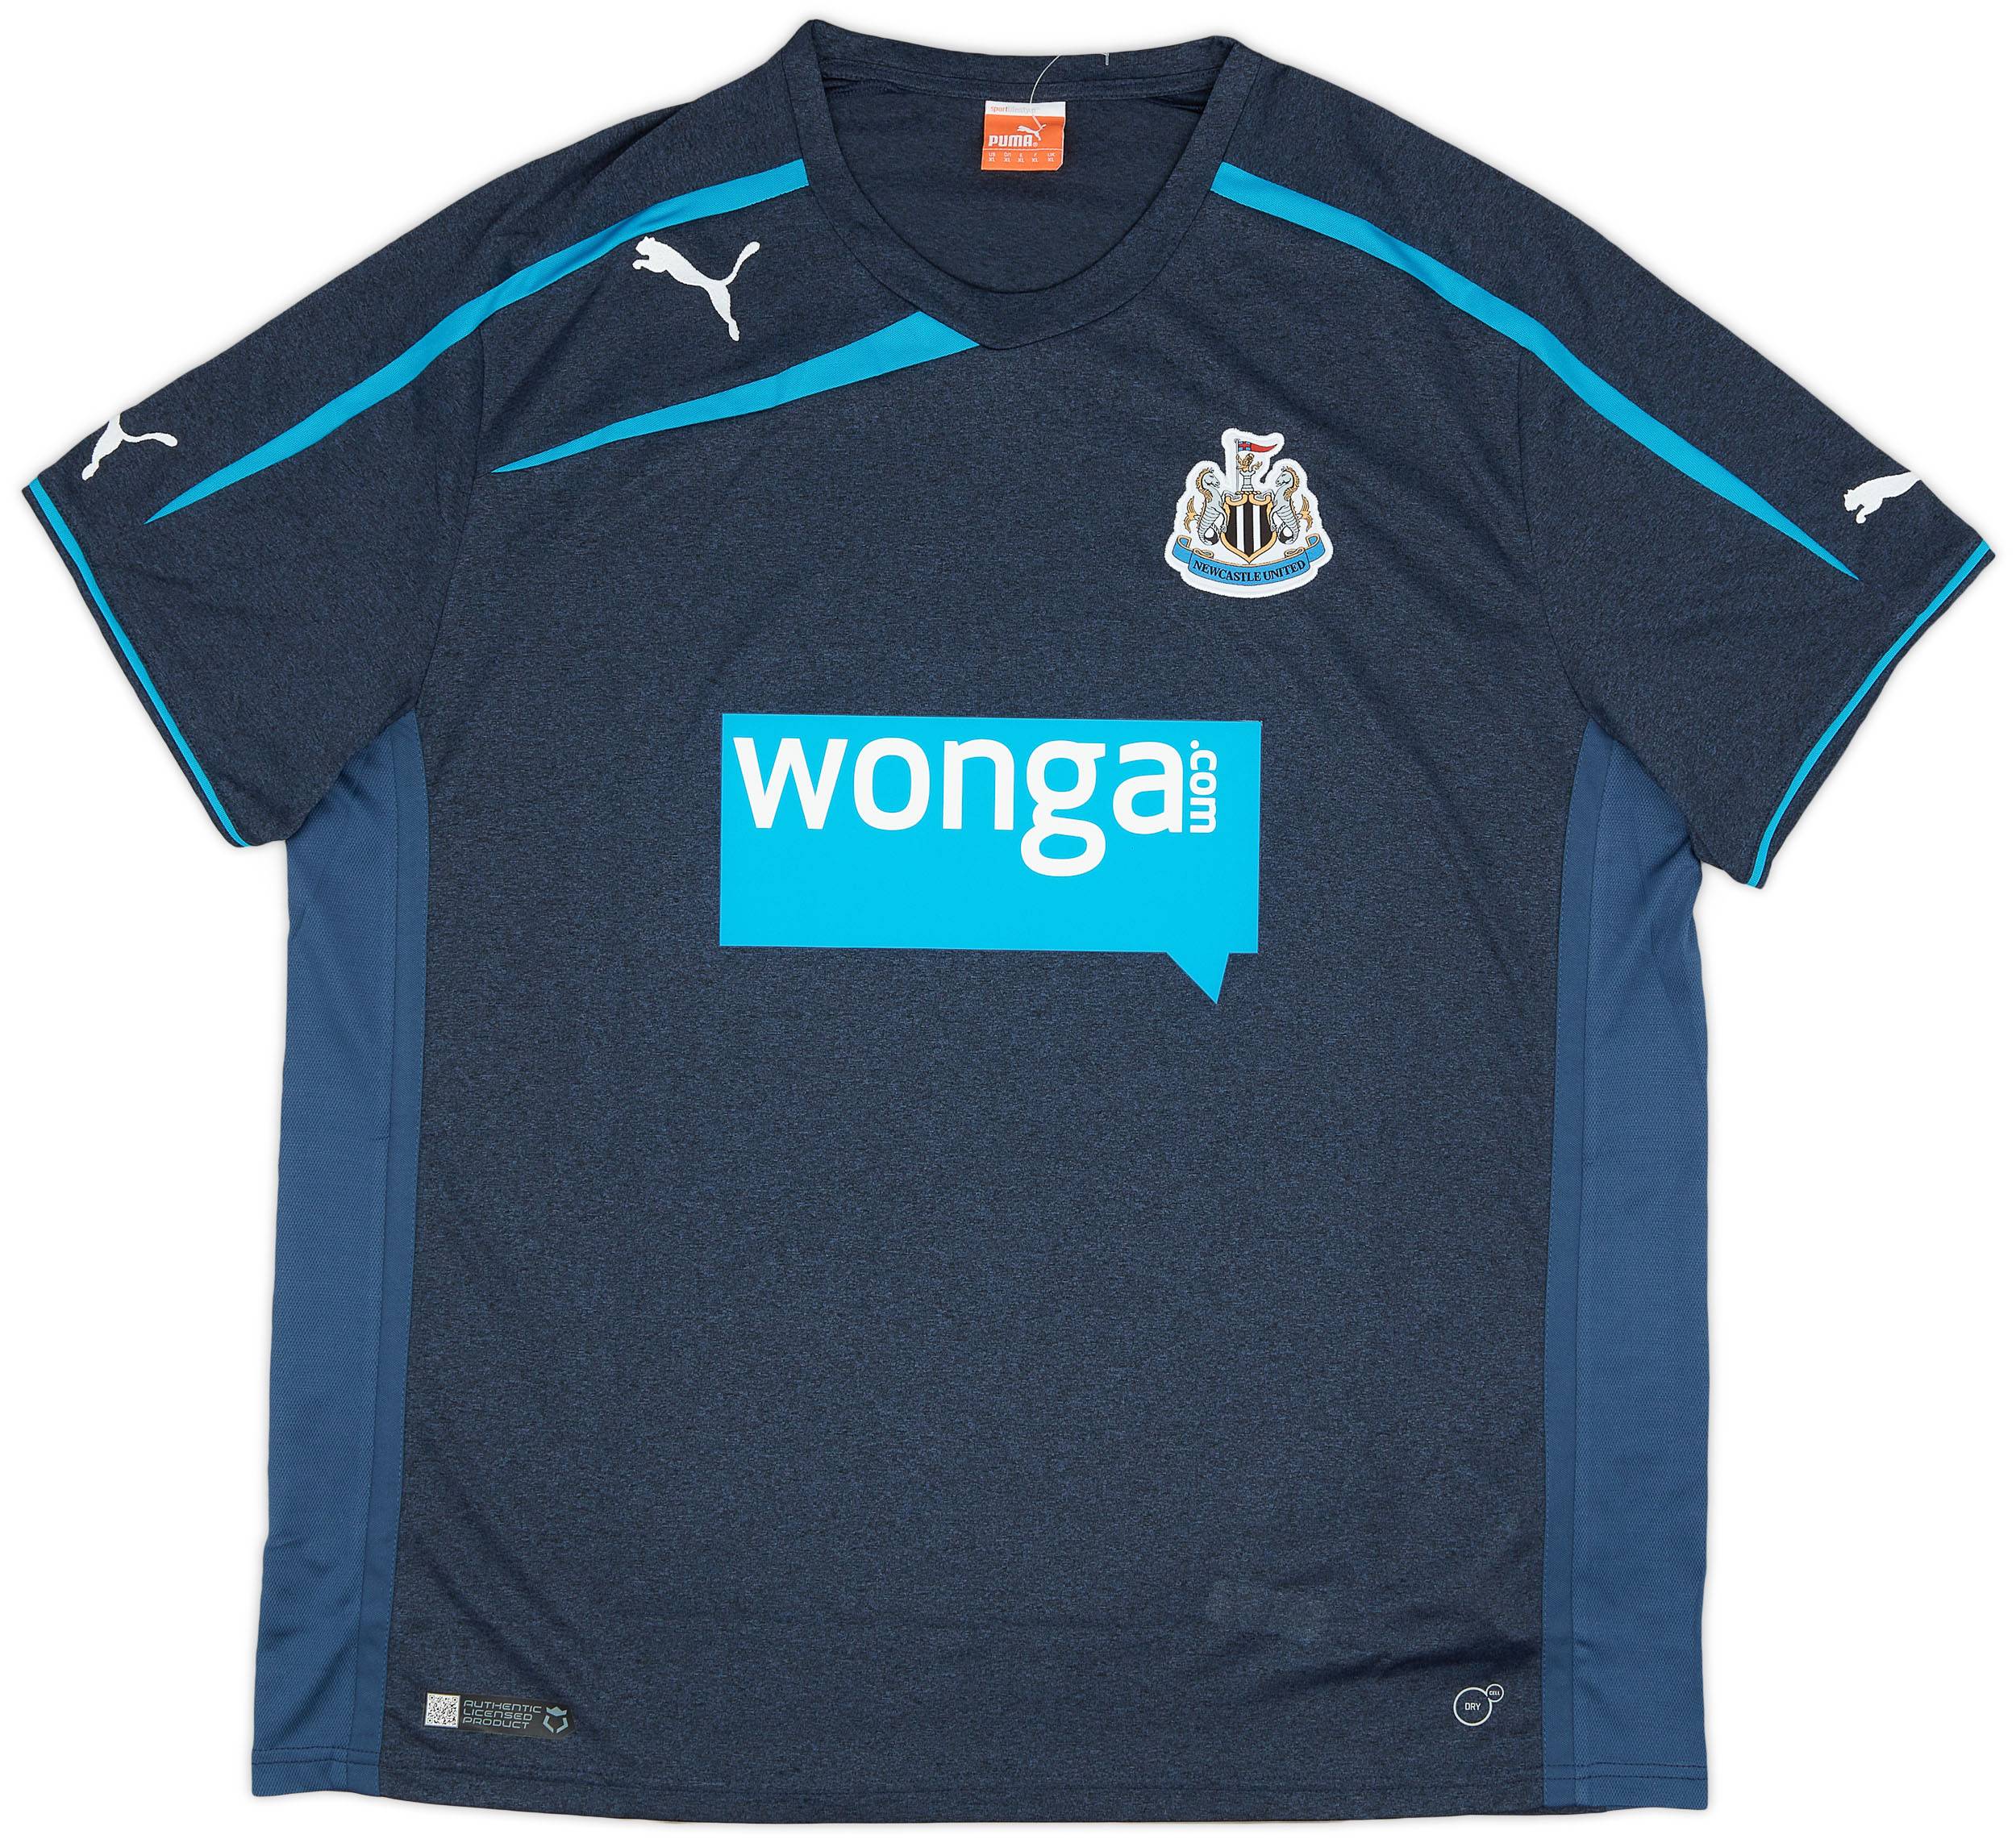 2013-14 Newcastle Away Shirt - 9/10 - (XL)